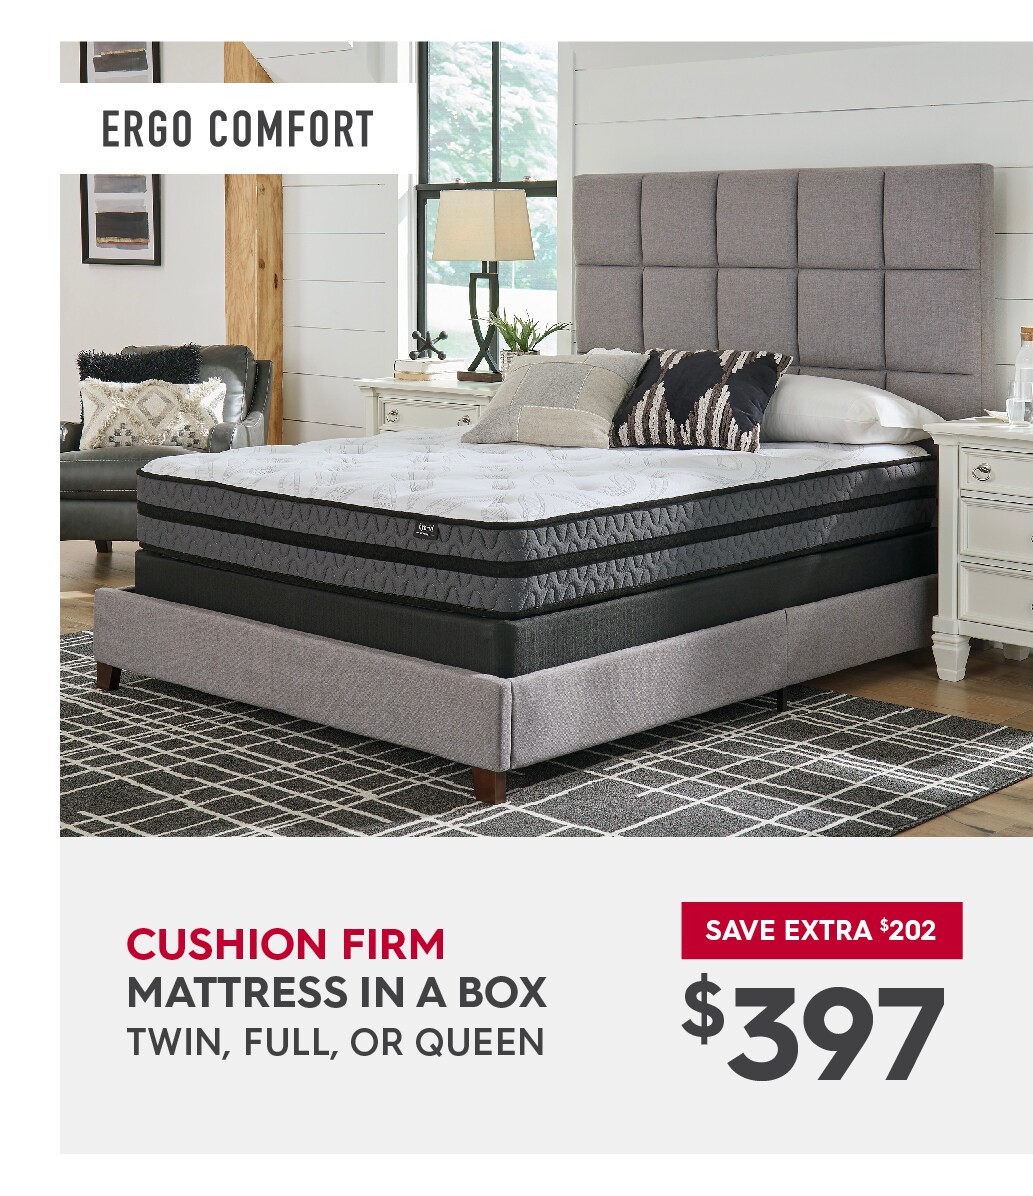 Shop Ergo Comfort Cushion Firm mattress deals.